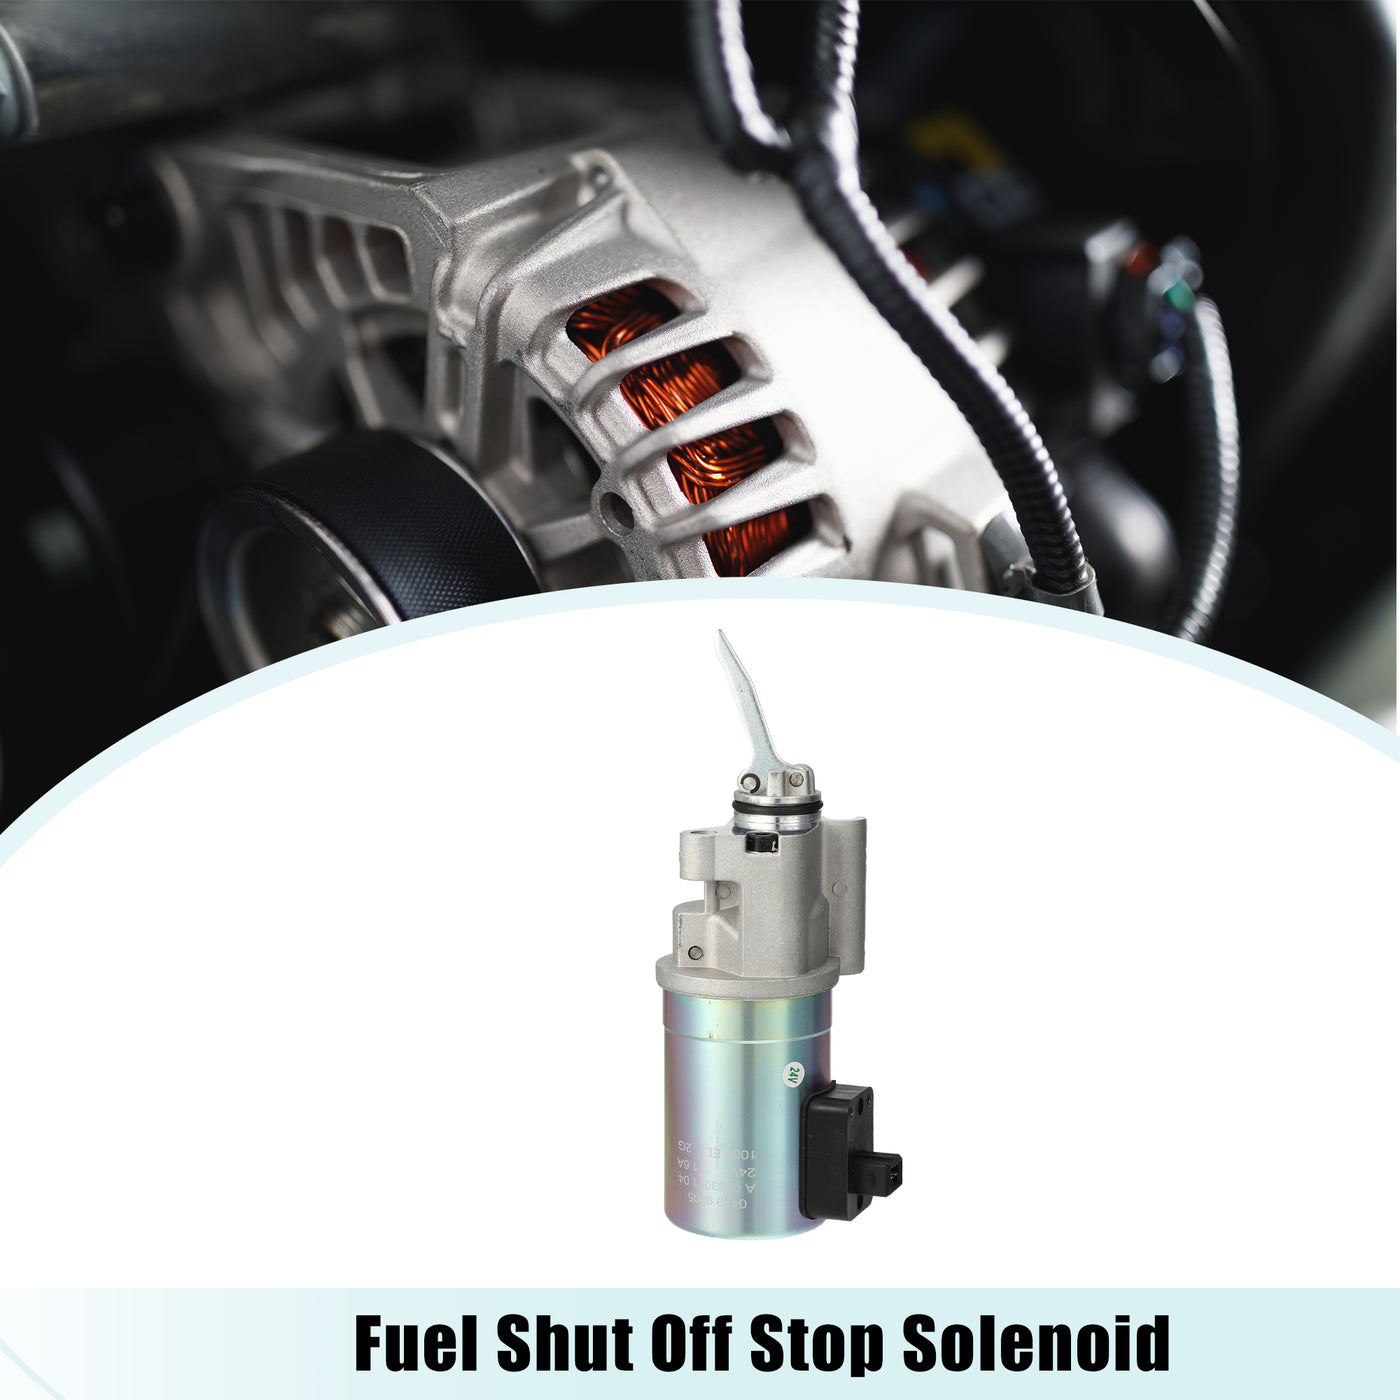 ACROPIX Fuel Shut Off Stop Solenoid Valve 02113793/04199905 Fit for Deutz 2012 Engine Shutdown Device 12V 24V - Pack of 1